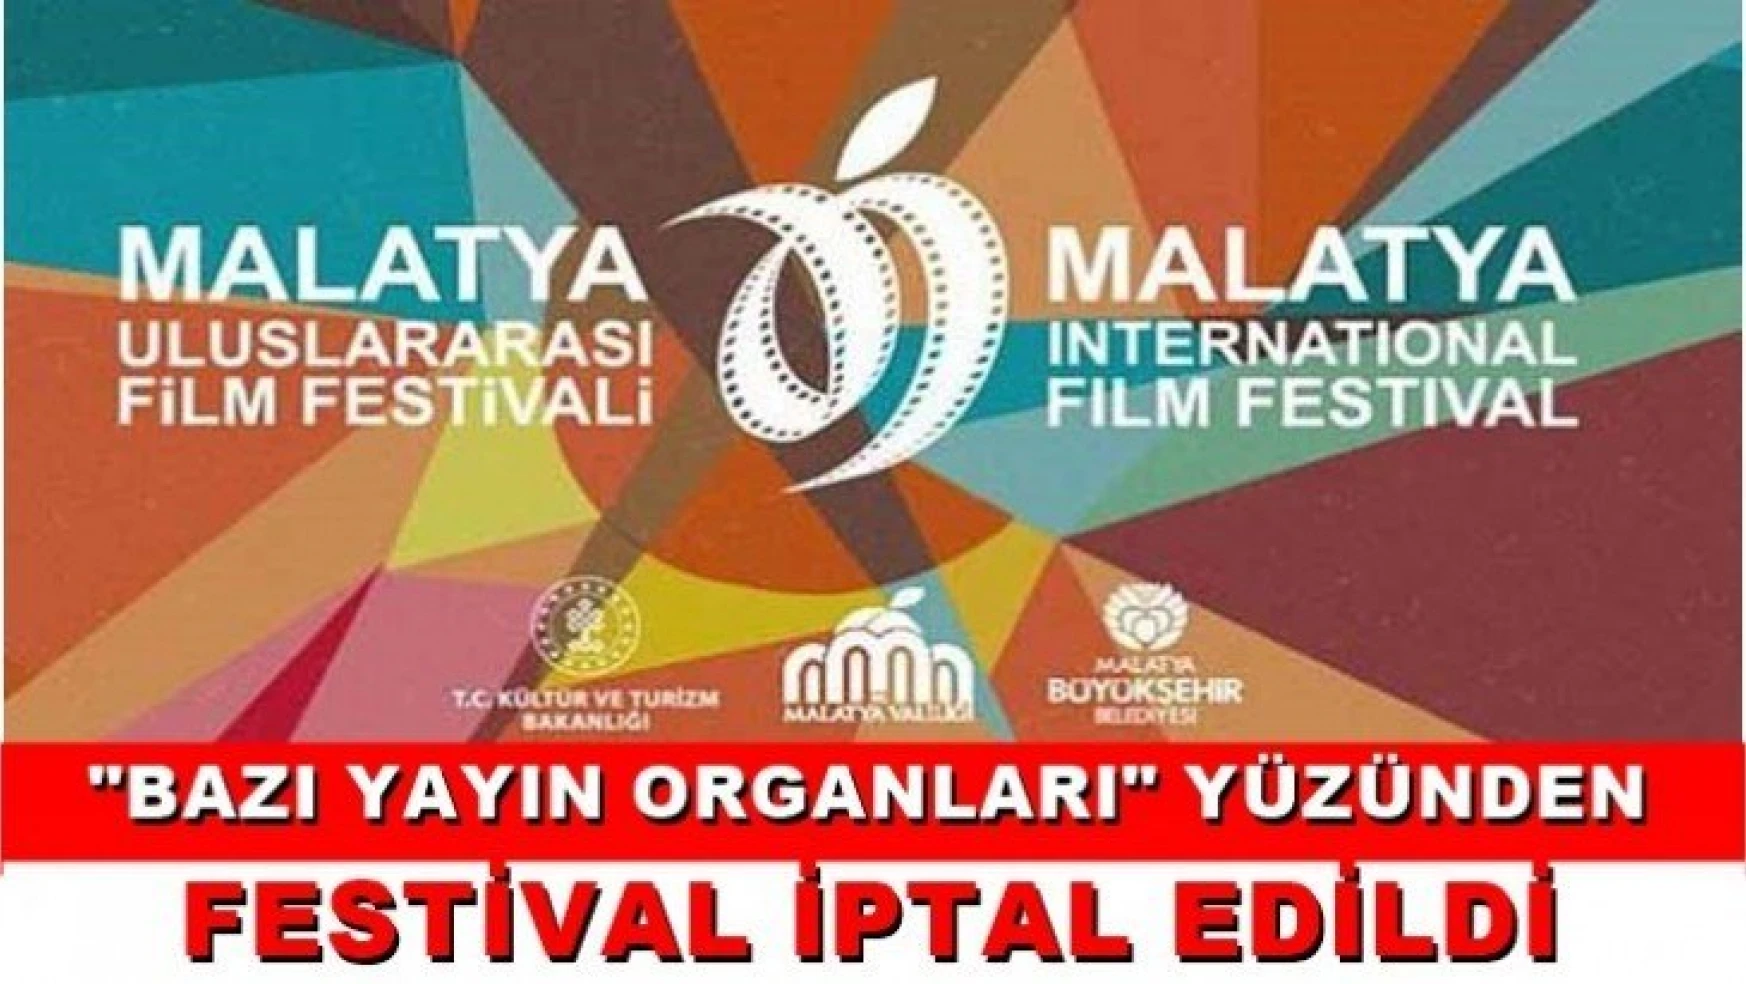 'Bazı yayın organları' yüzünde Festival iptal edildi!